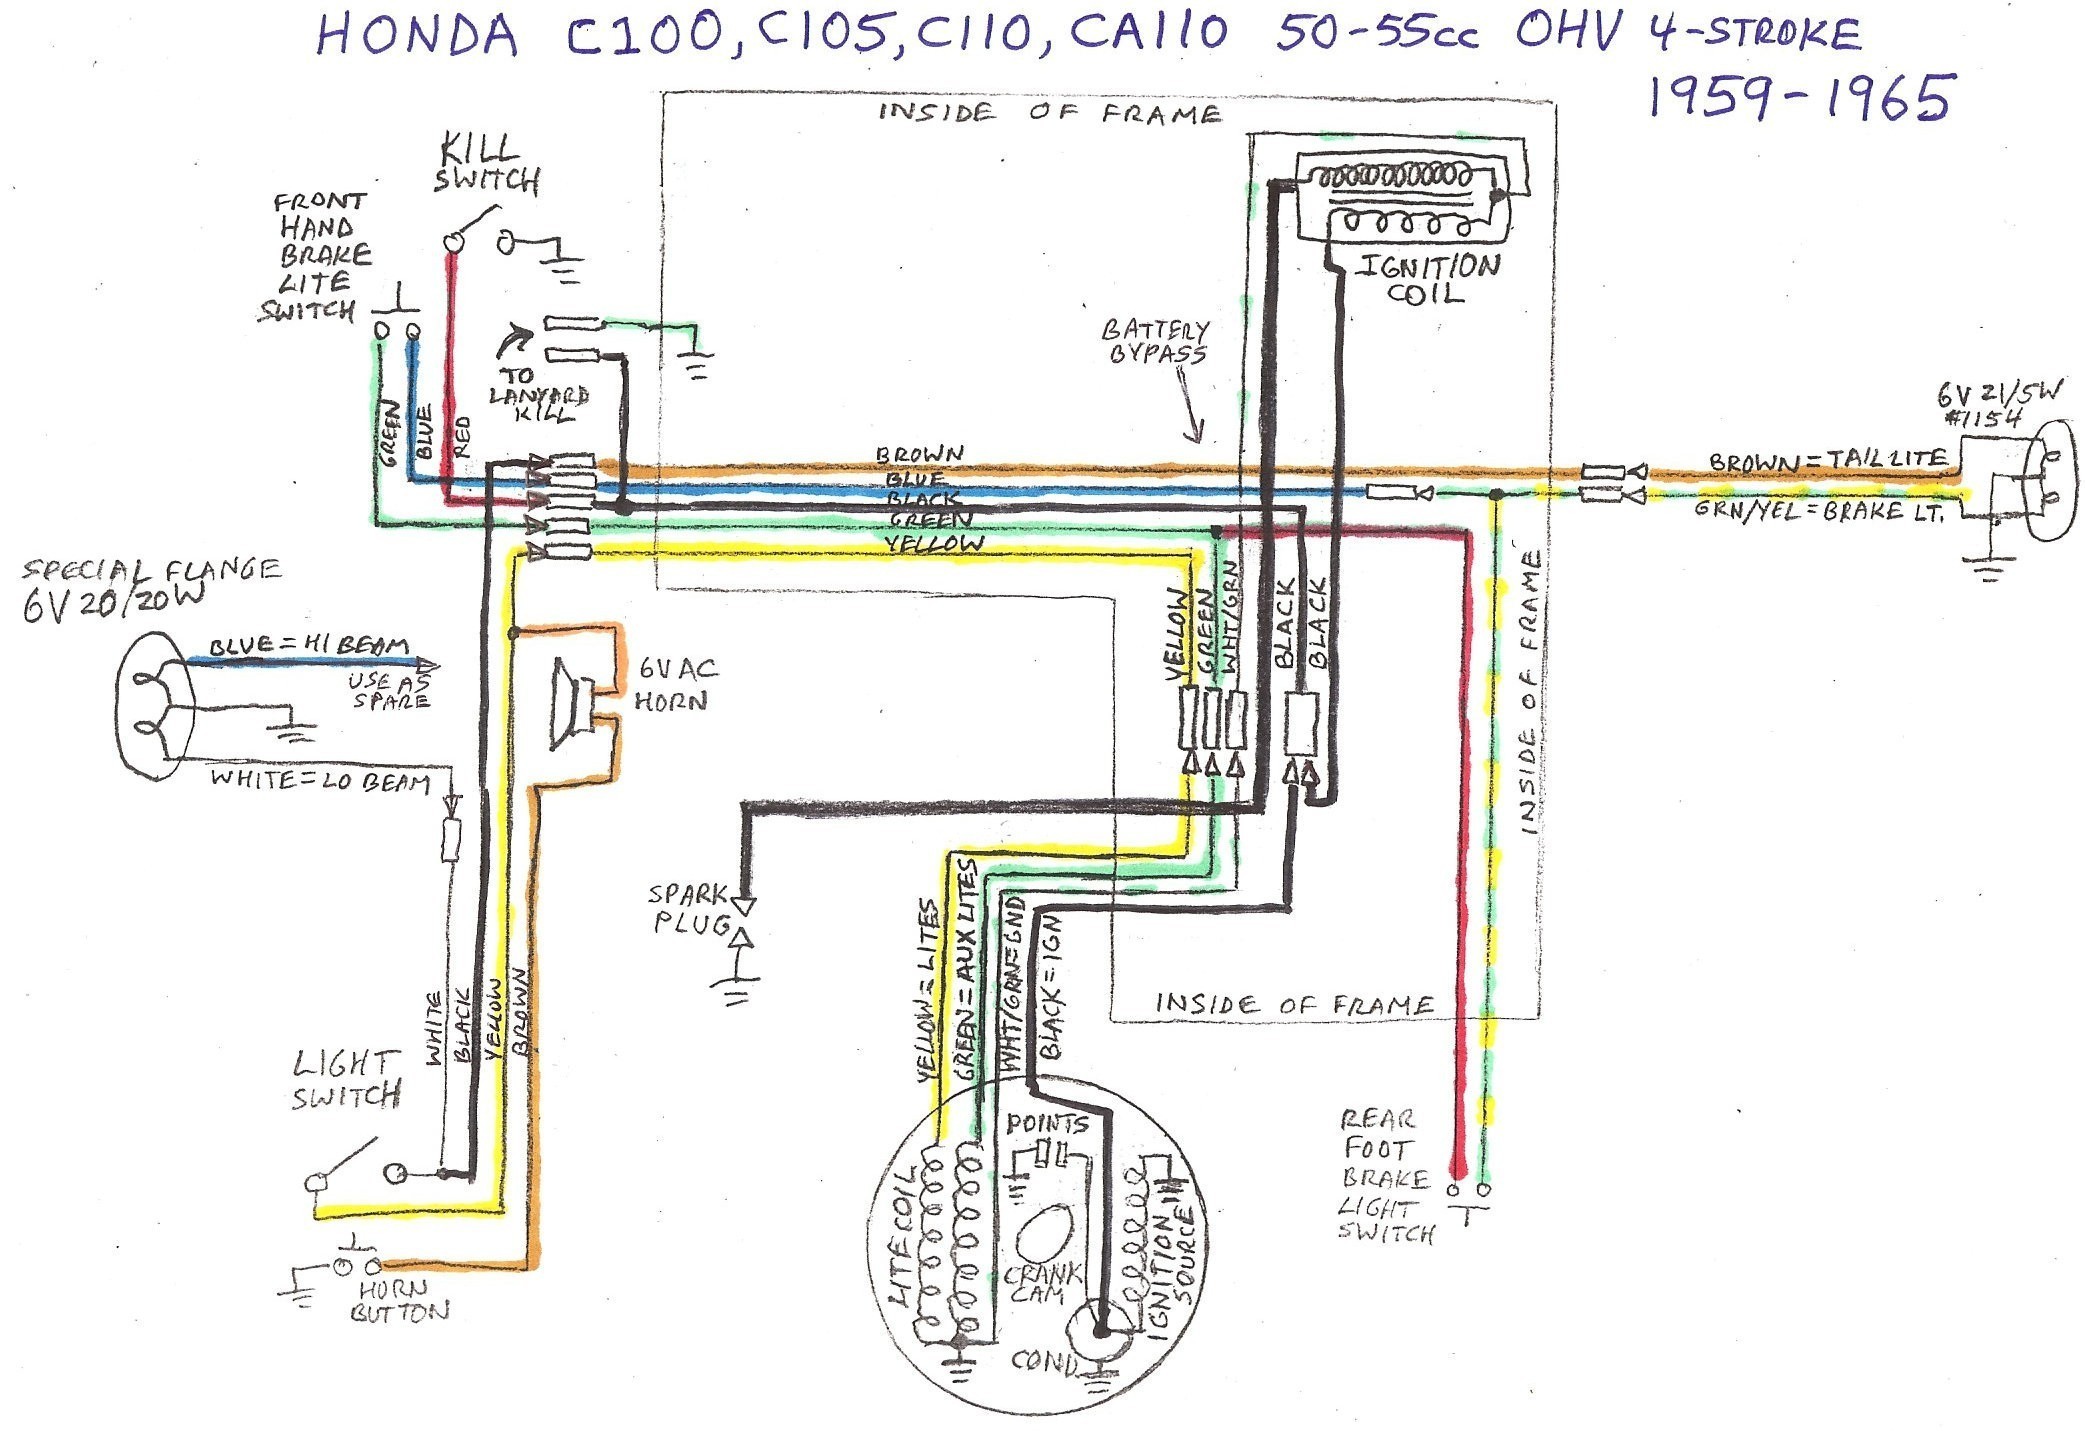 Honda Cb750 Wiring Diagram Honda C70 Wiring Diagram S New Honda Cb750 Wiring Diagram Of Honda Cb750 Wiring Diagram